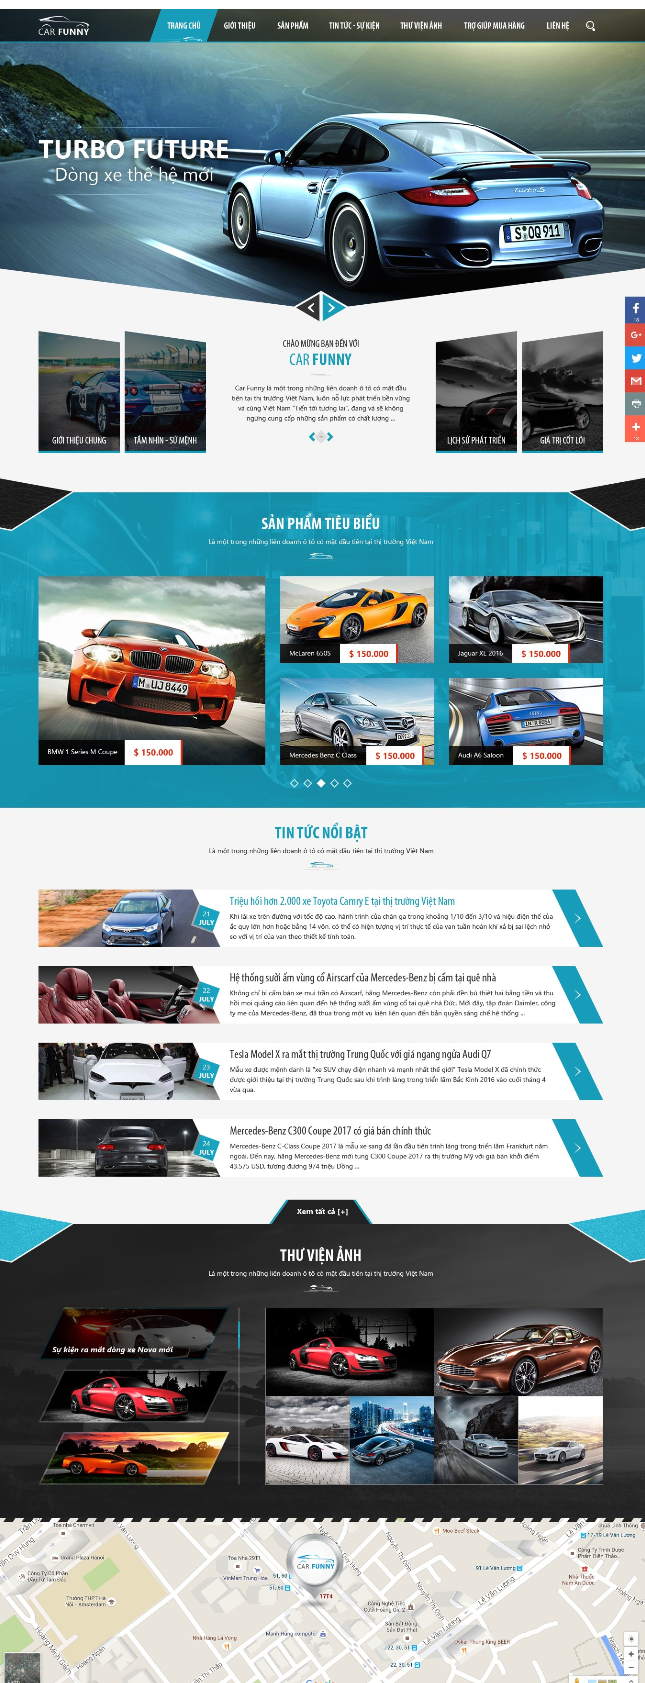 Thiết kế website ô tô đẹp, chuyên nghiệp